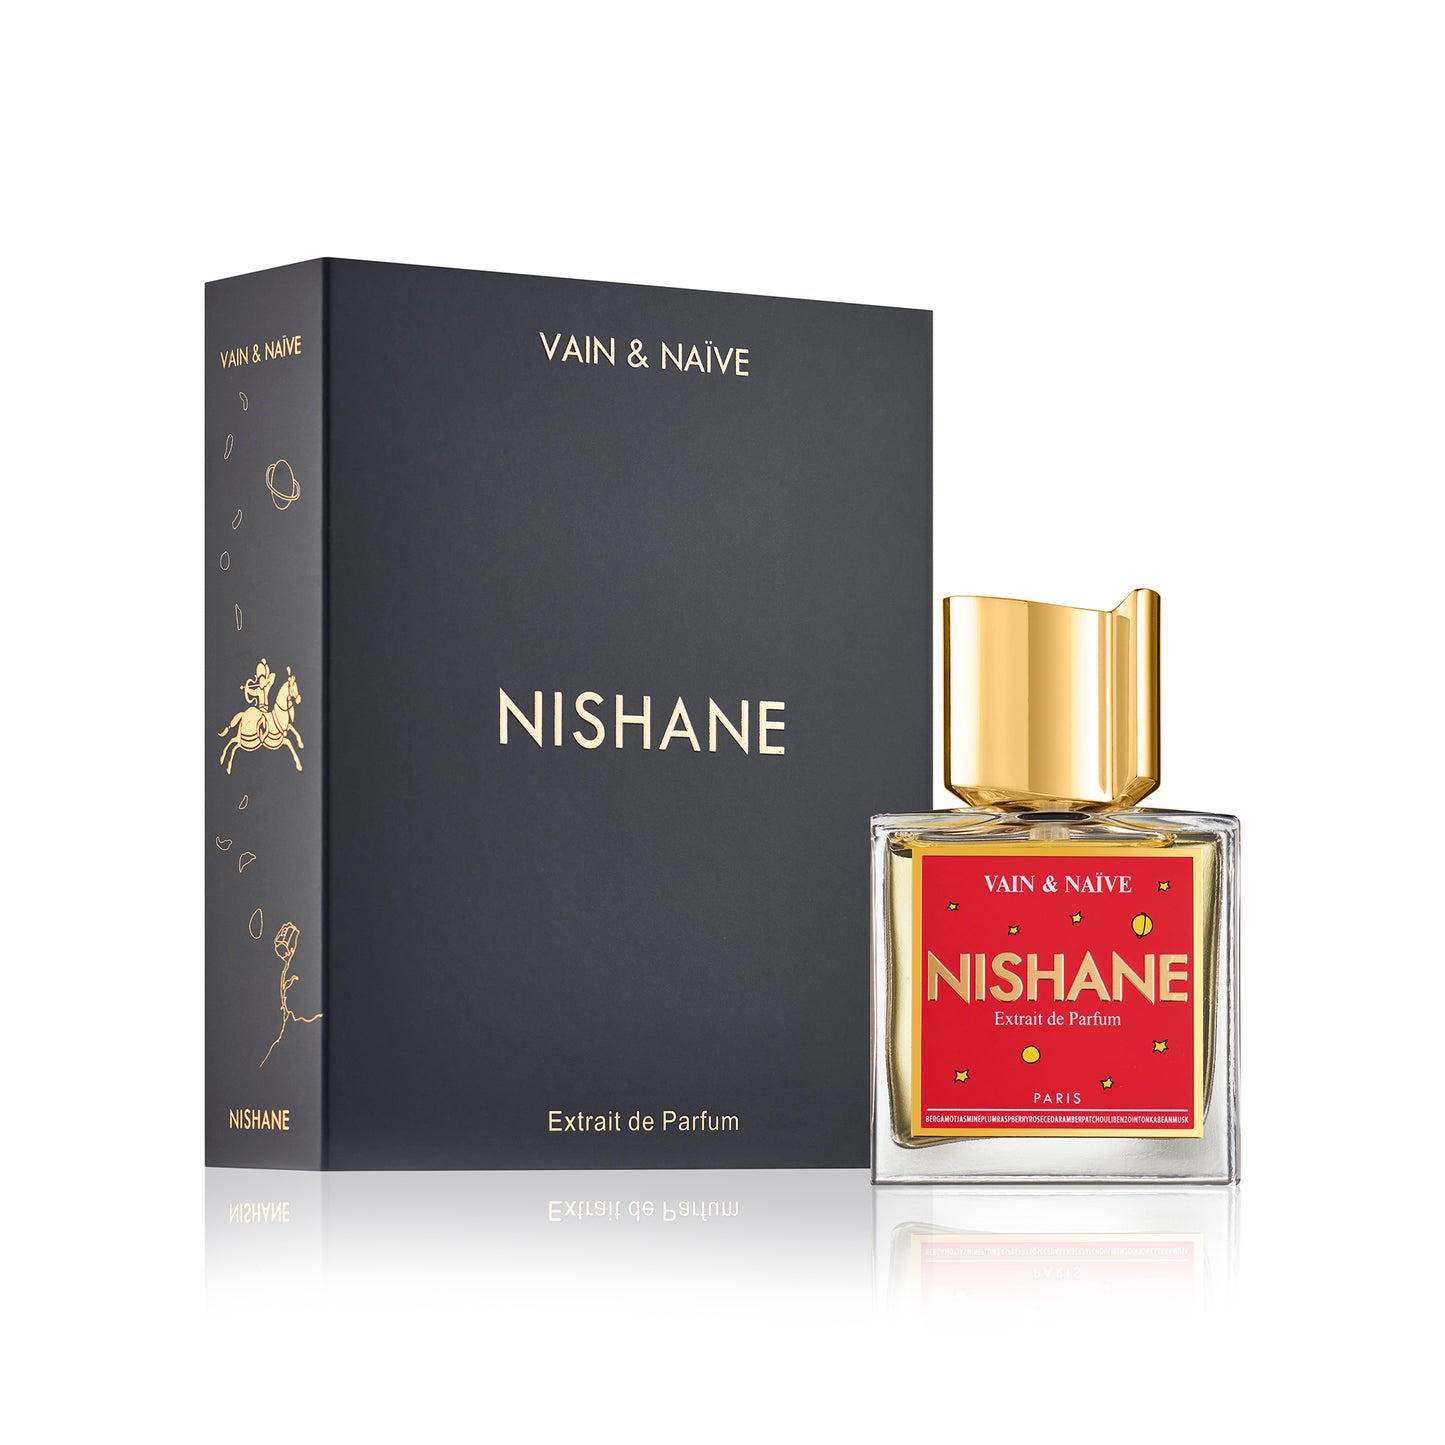 Vain & Naive 1.7oz Extrait de Parfum